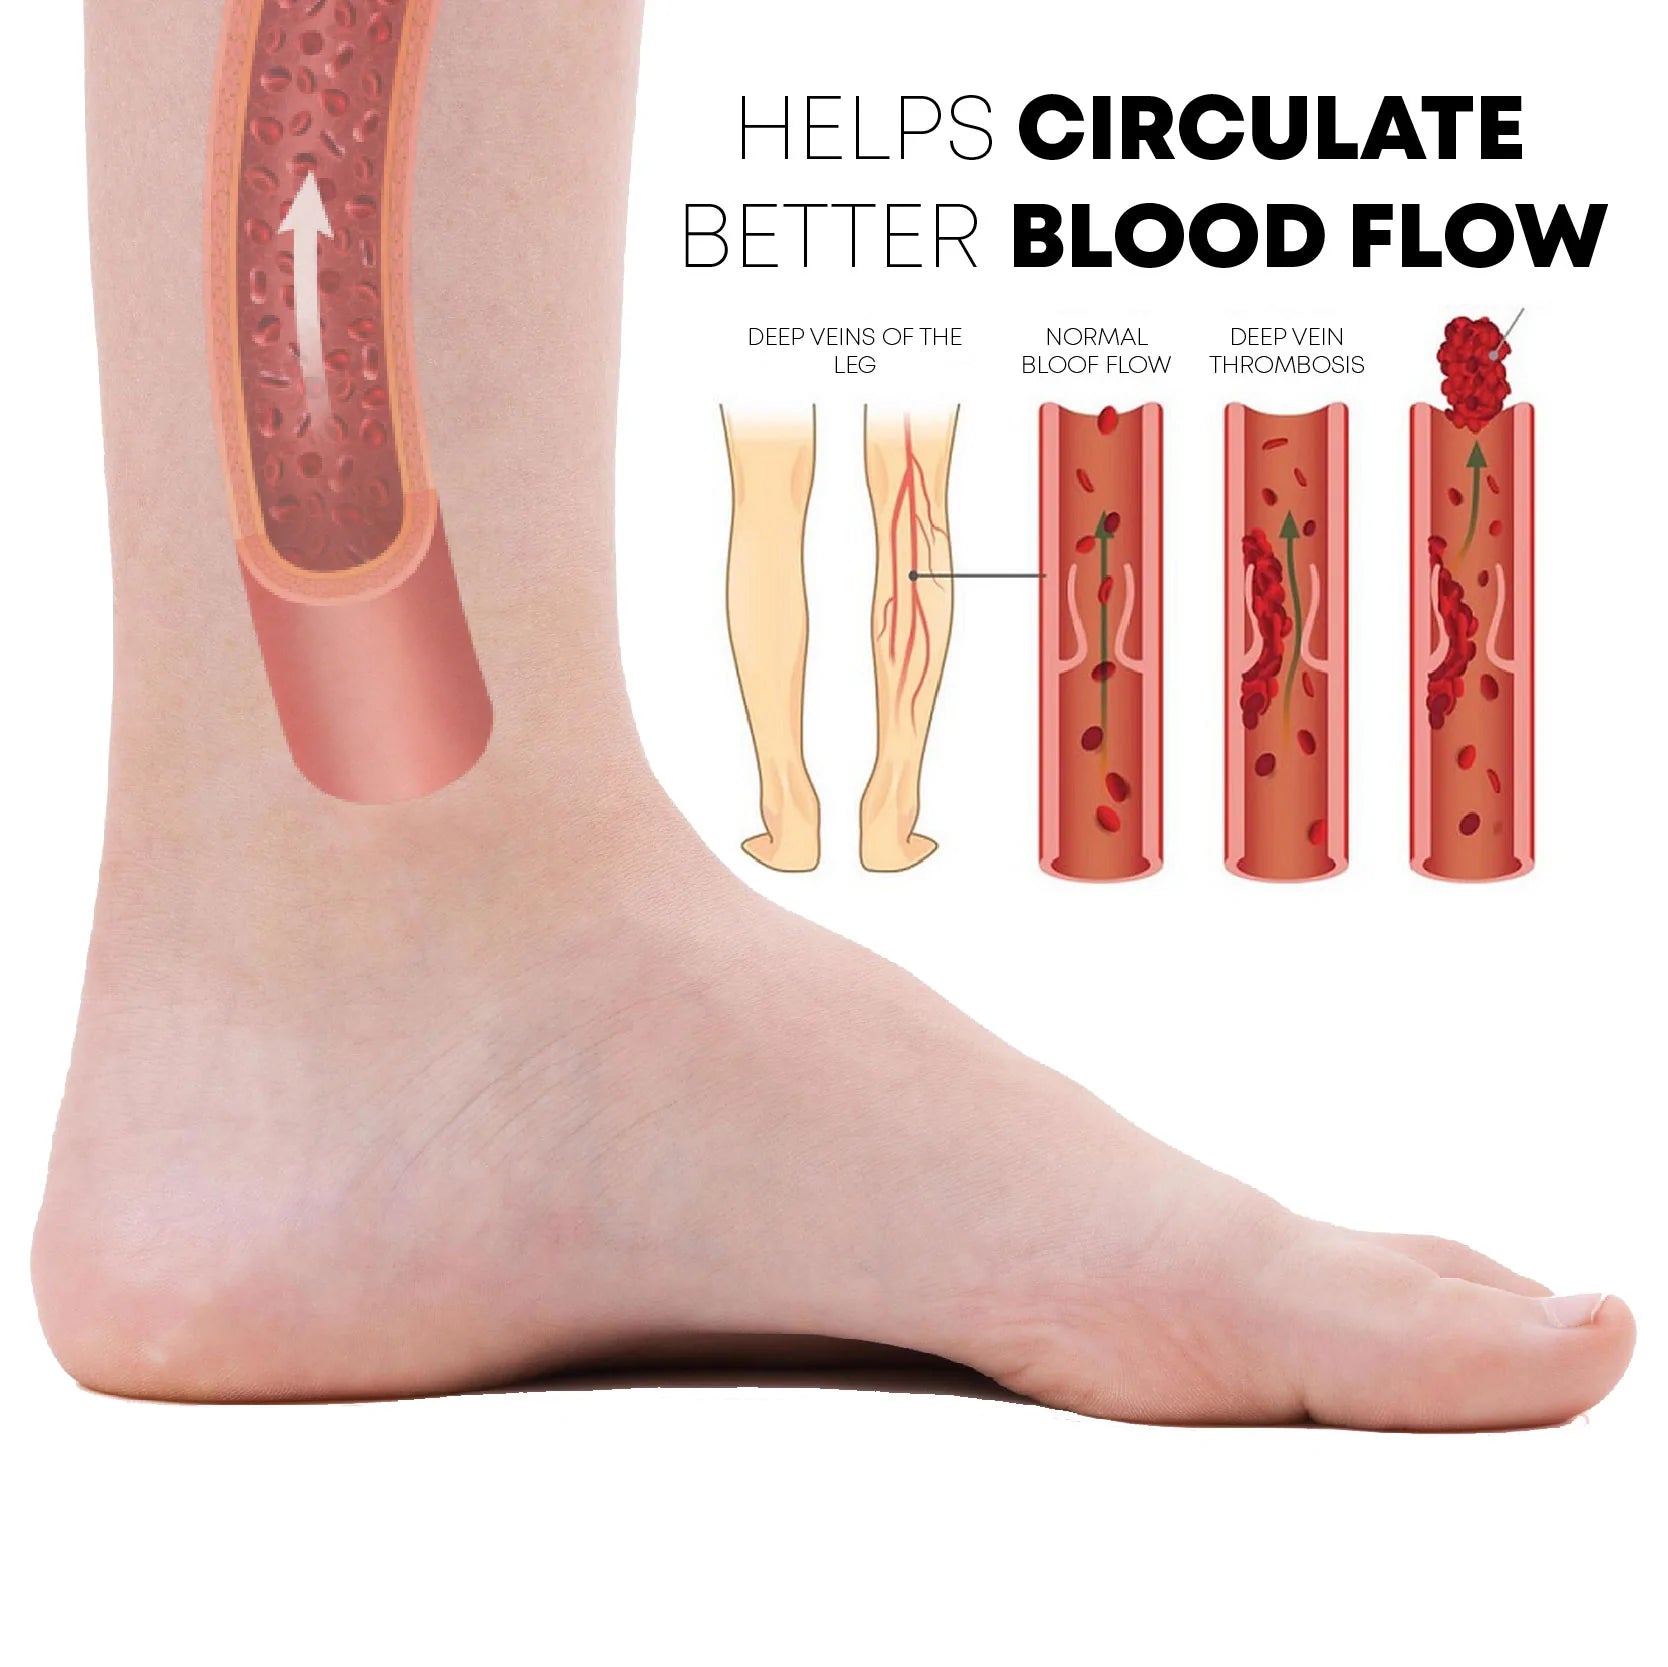 EMS Foot Massage Mat  get rid of swollen feet & varicose veins